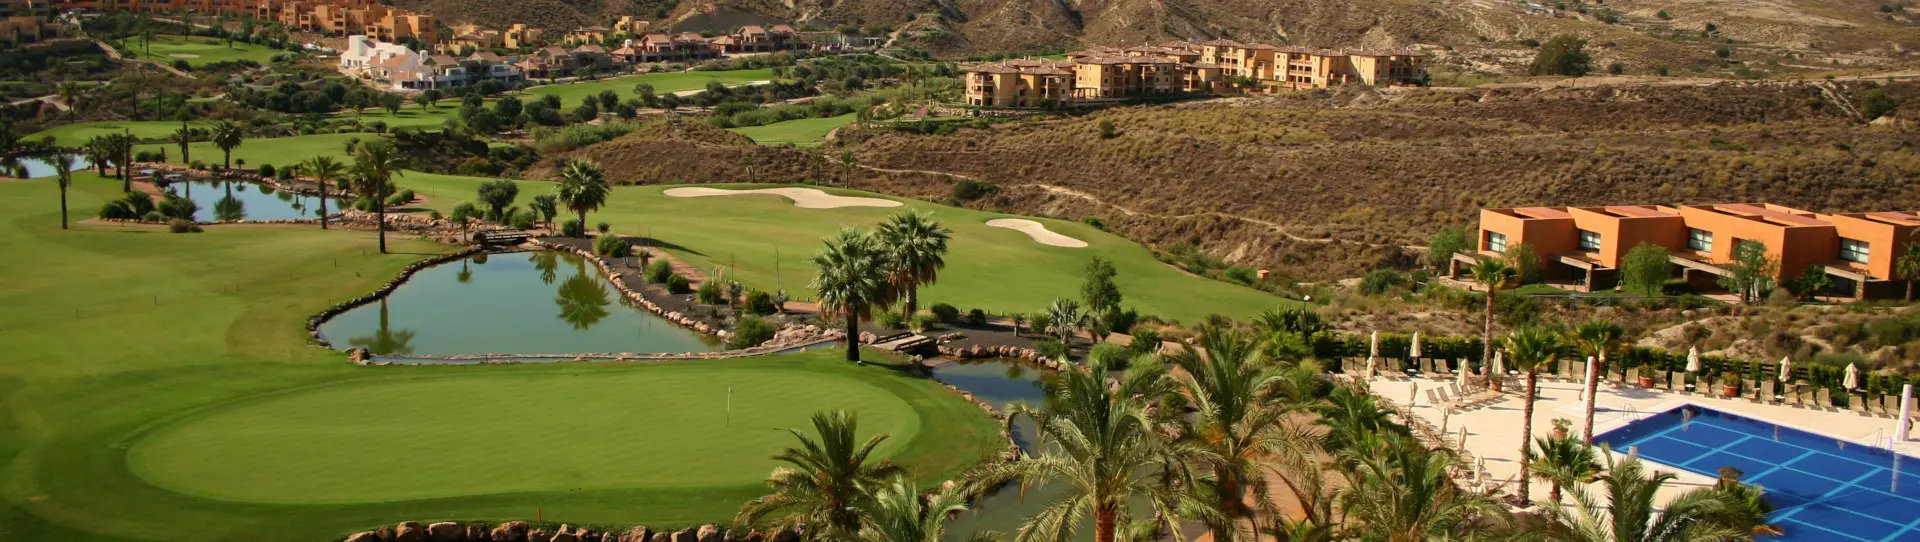 Spain golf courses - Valle del Este - Photo 1